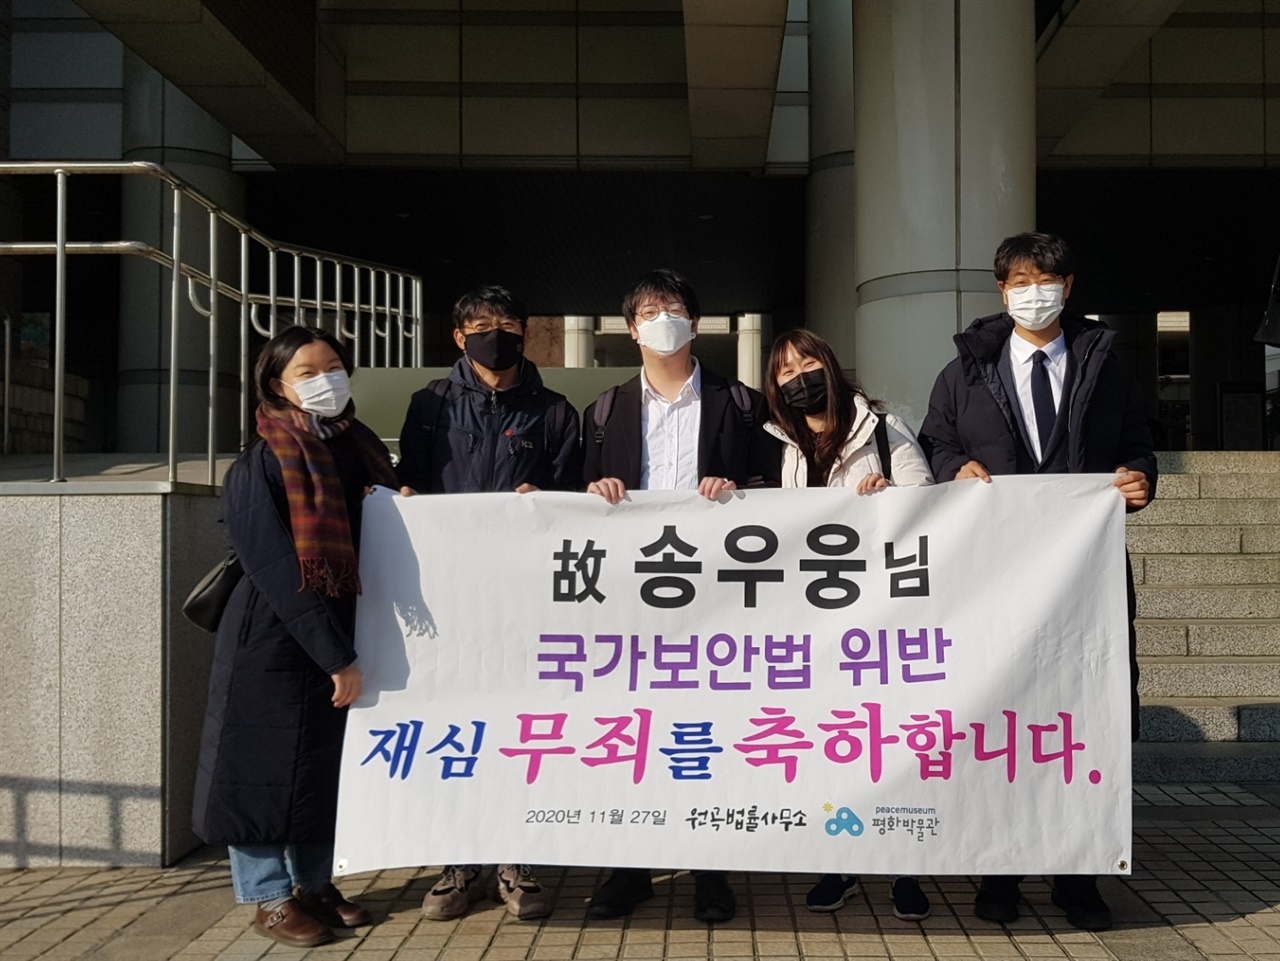  2020년 11월 27일 서울지방법원에서 무죄를 선고받은 망 송우웅 씨 가족과 변호인, 그리고 평화박물관 활동가들이 기념사진을 찍고 있다